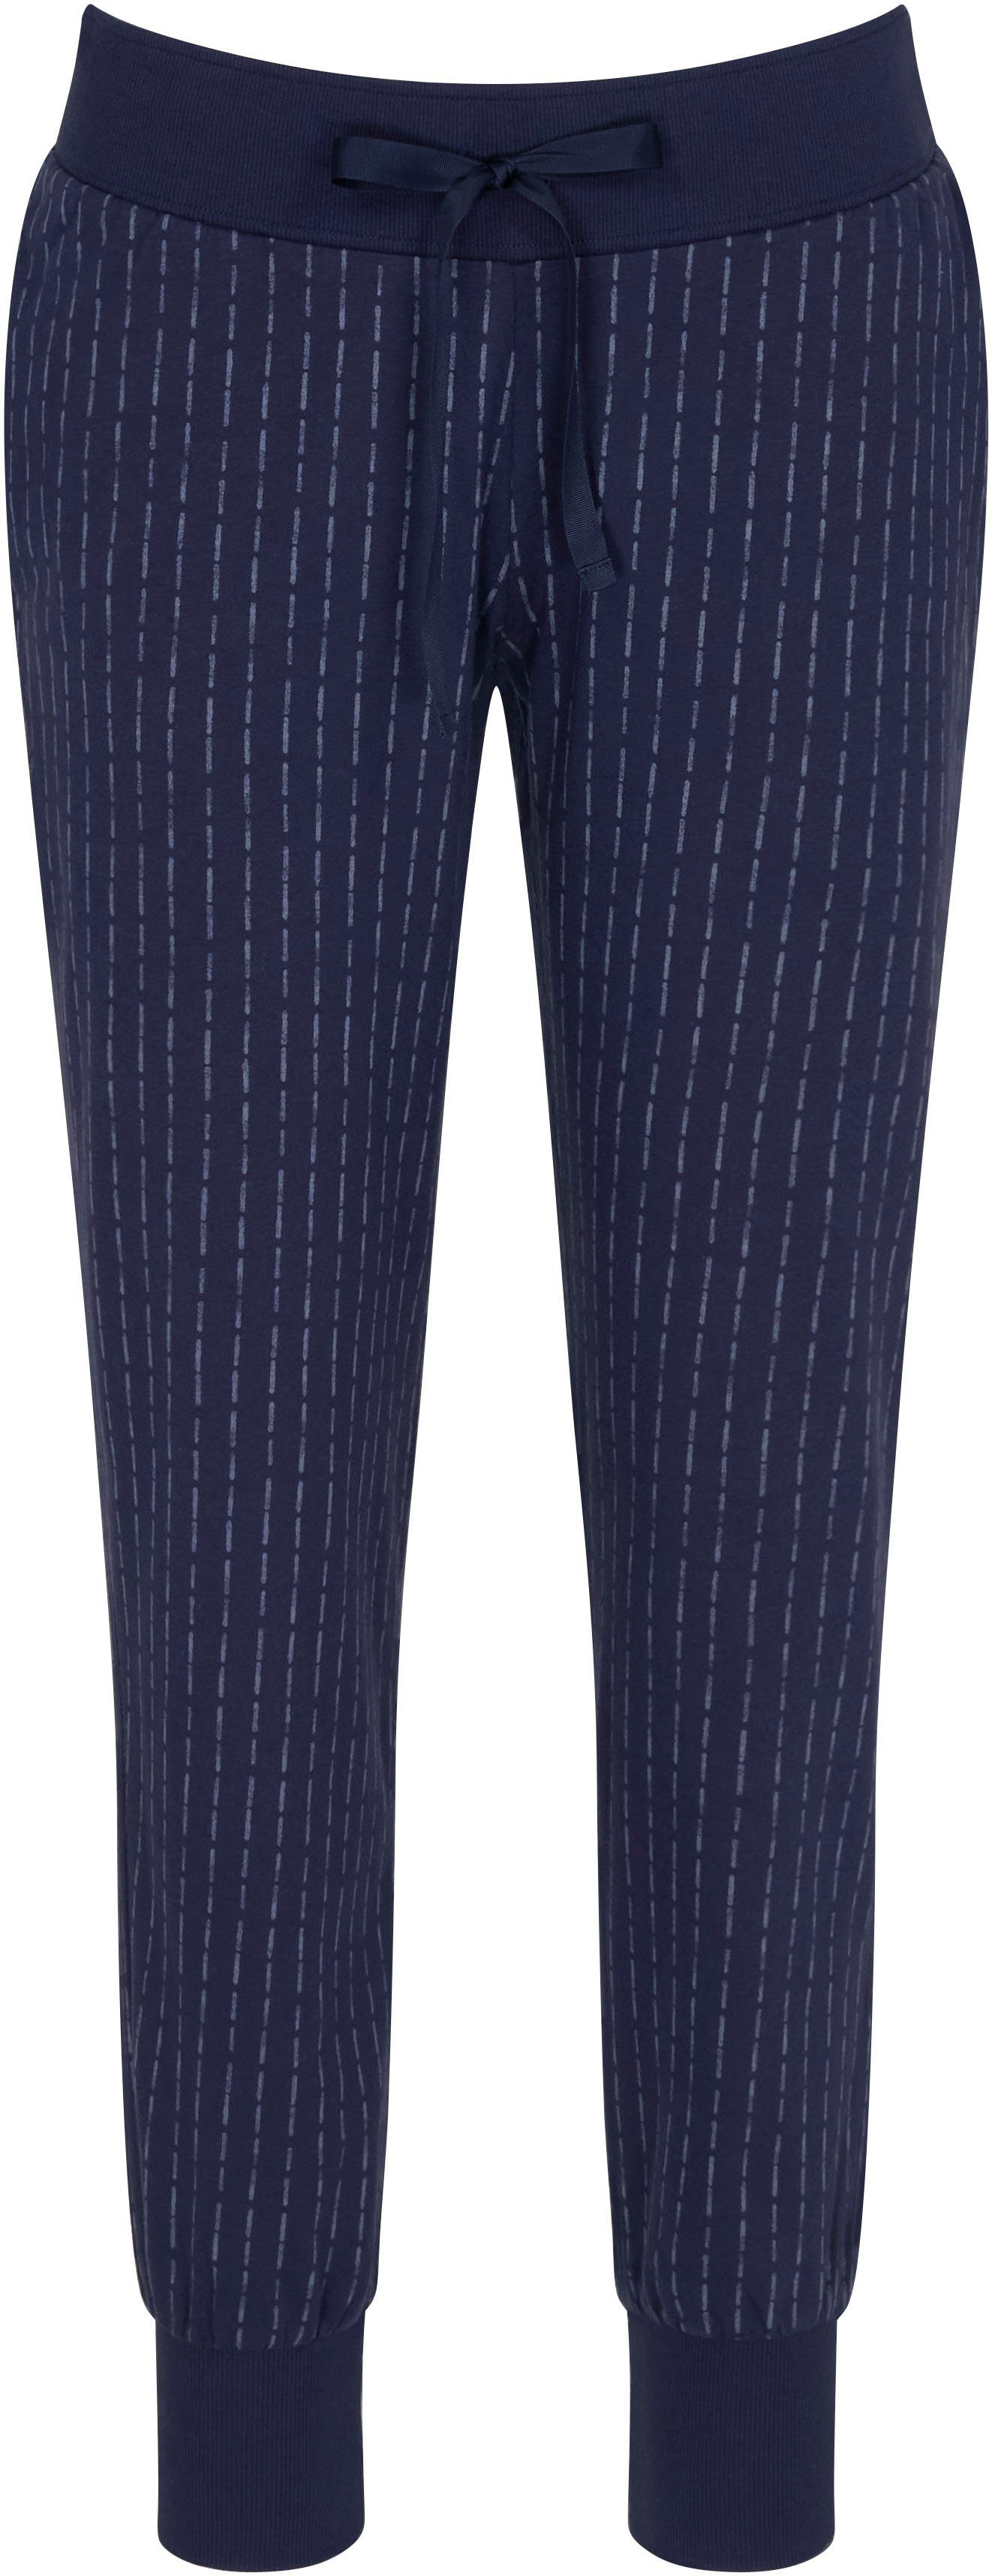 Match Trousers 02 Schlafhose X bedruckt Jersey & Triumph Pyjamahose Mix